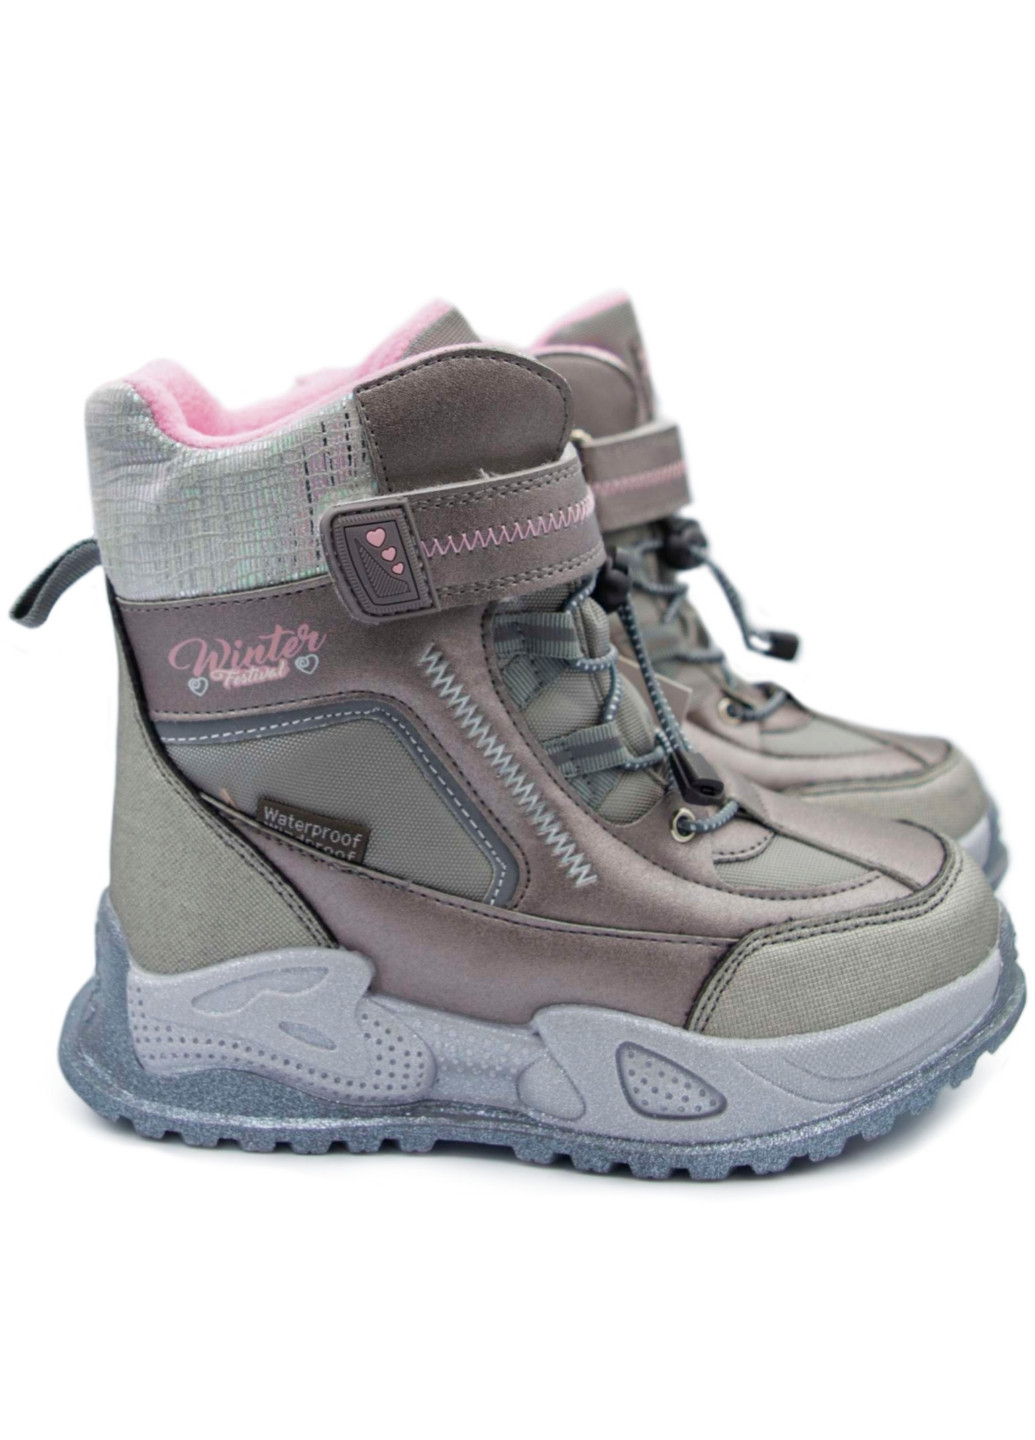 Зимові чоботи для дівчини, термовзуття, сноубутси, черевики, гоботи р .27-32 Том.М (254455878)